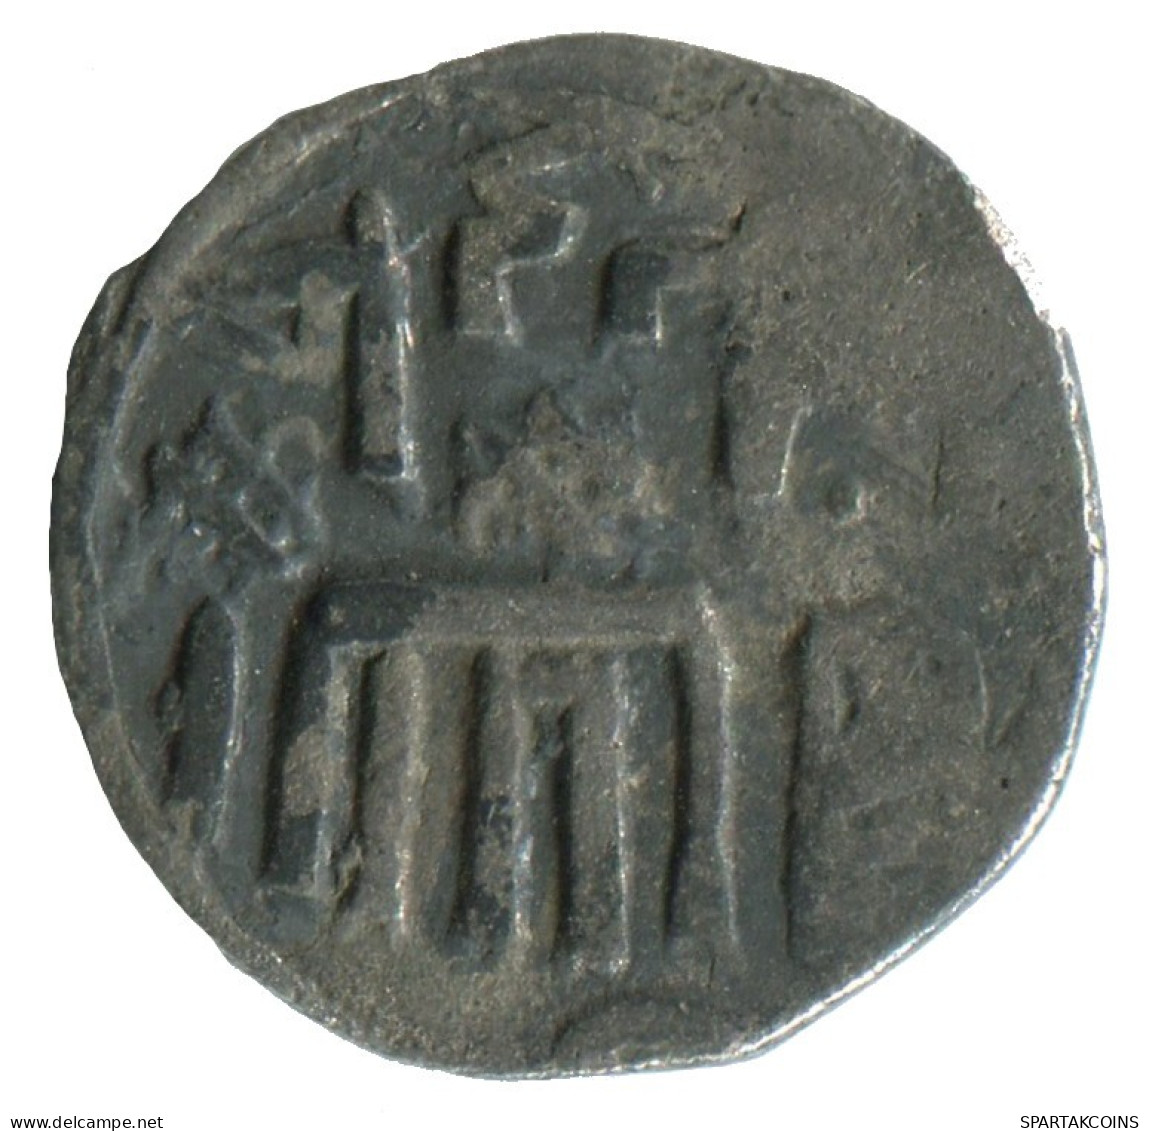 GOLDEN HORDE Silver Dirham Medieval Islamic Coin 1.4g/16mm #NNN2011.8.D.A - Islamitisch